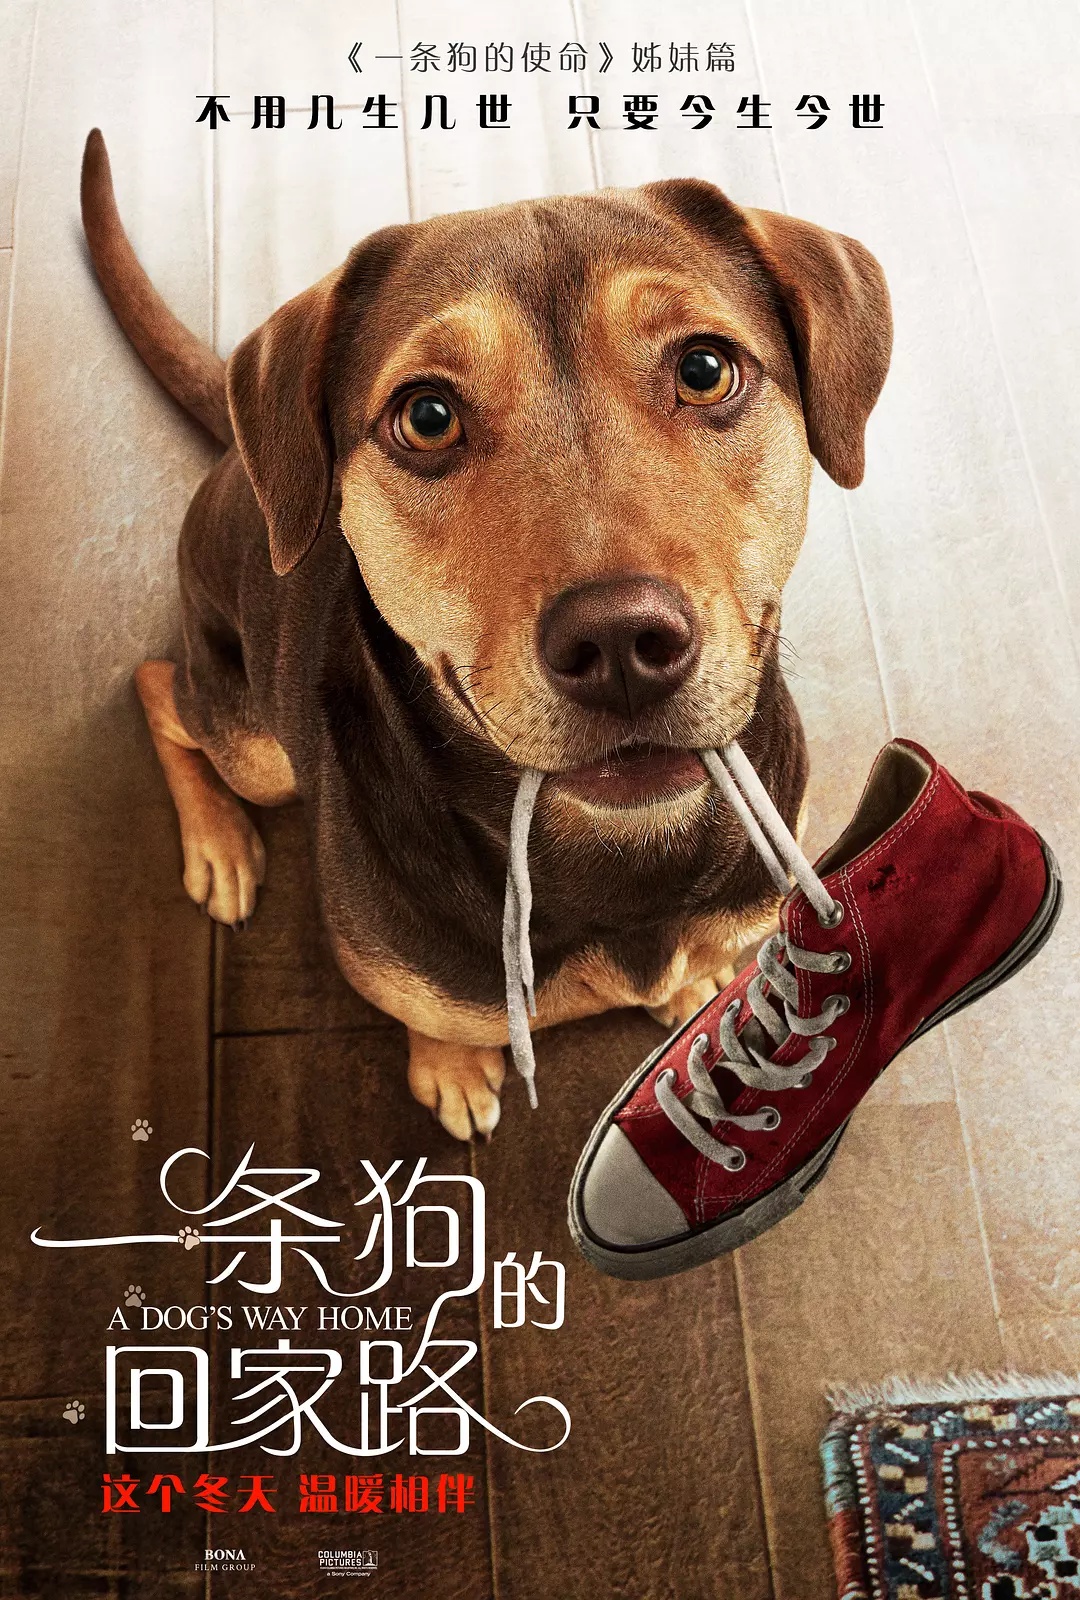 ดูหนังออนไลน์ฟรี ดูหนัง 4k A Dog s Way Home 2019 เพื่อนรักผจญภัยสี่ร้อยไมล์ 037moviefree